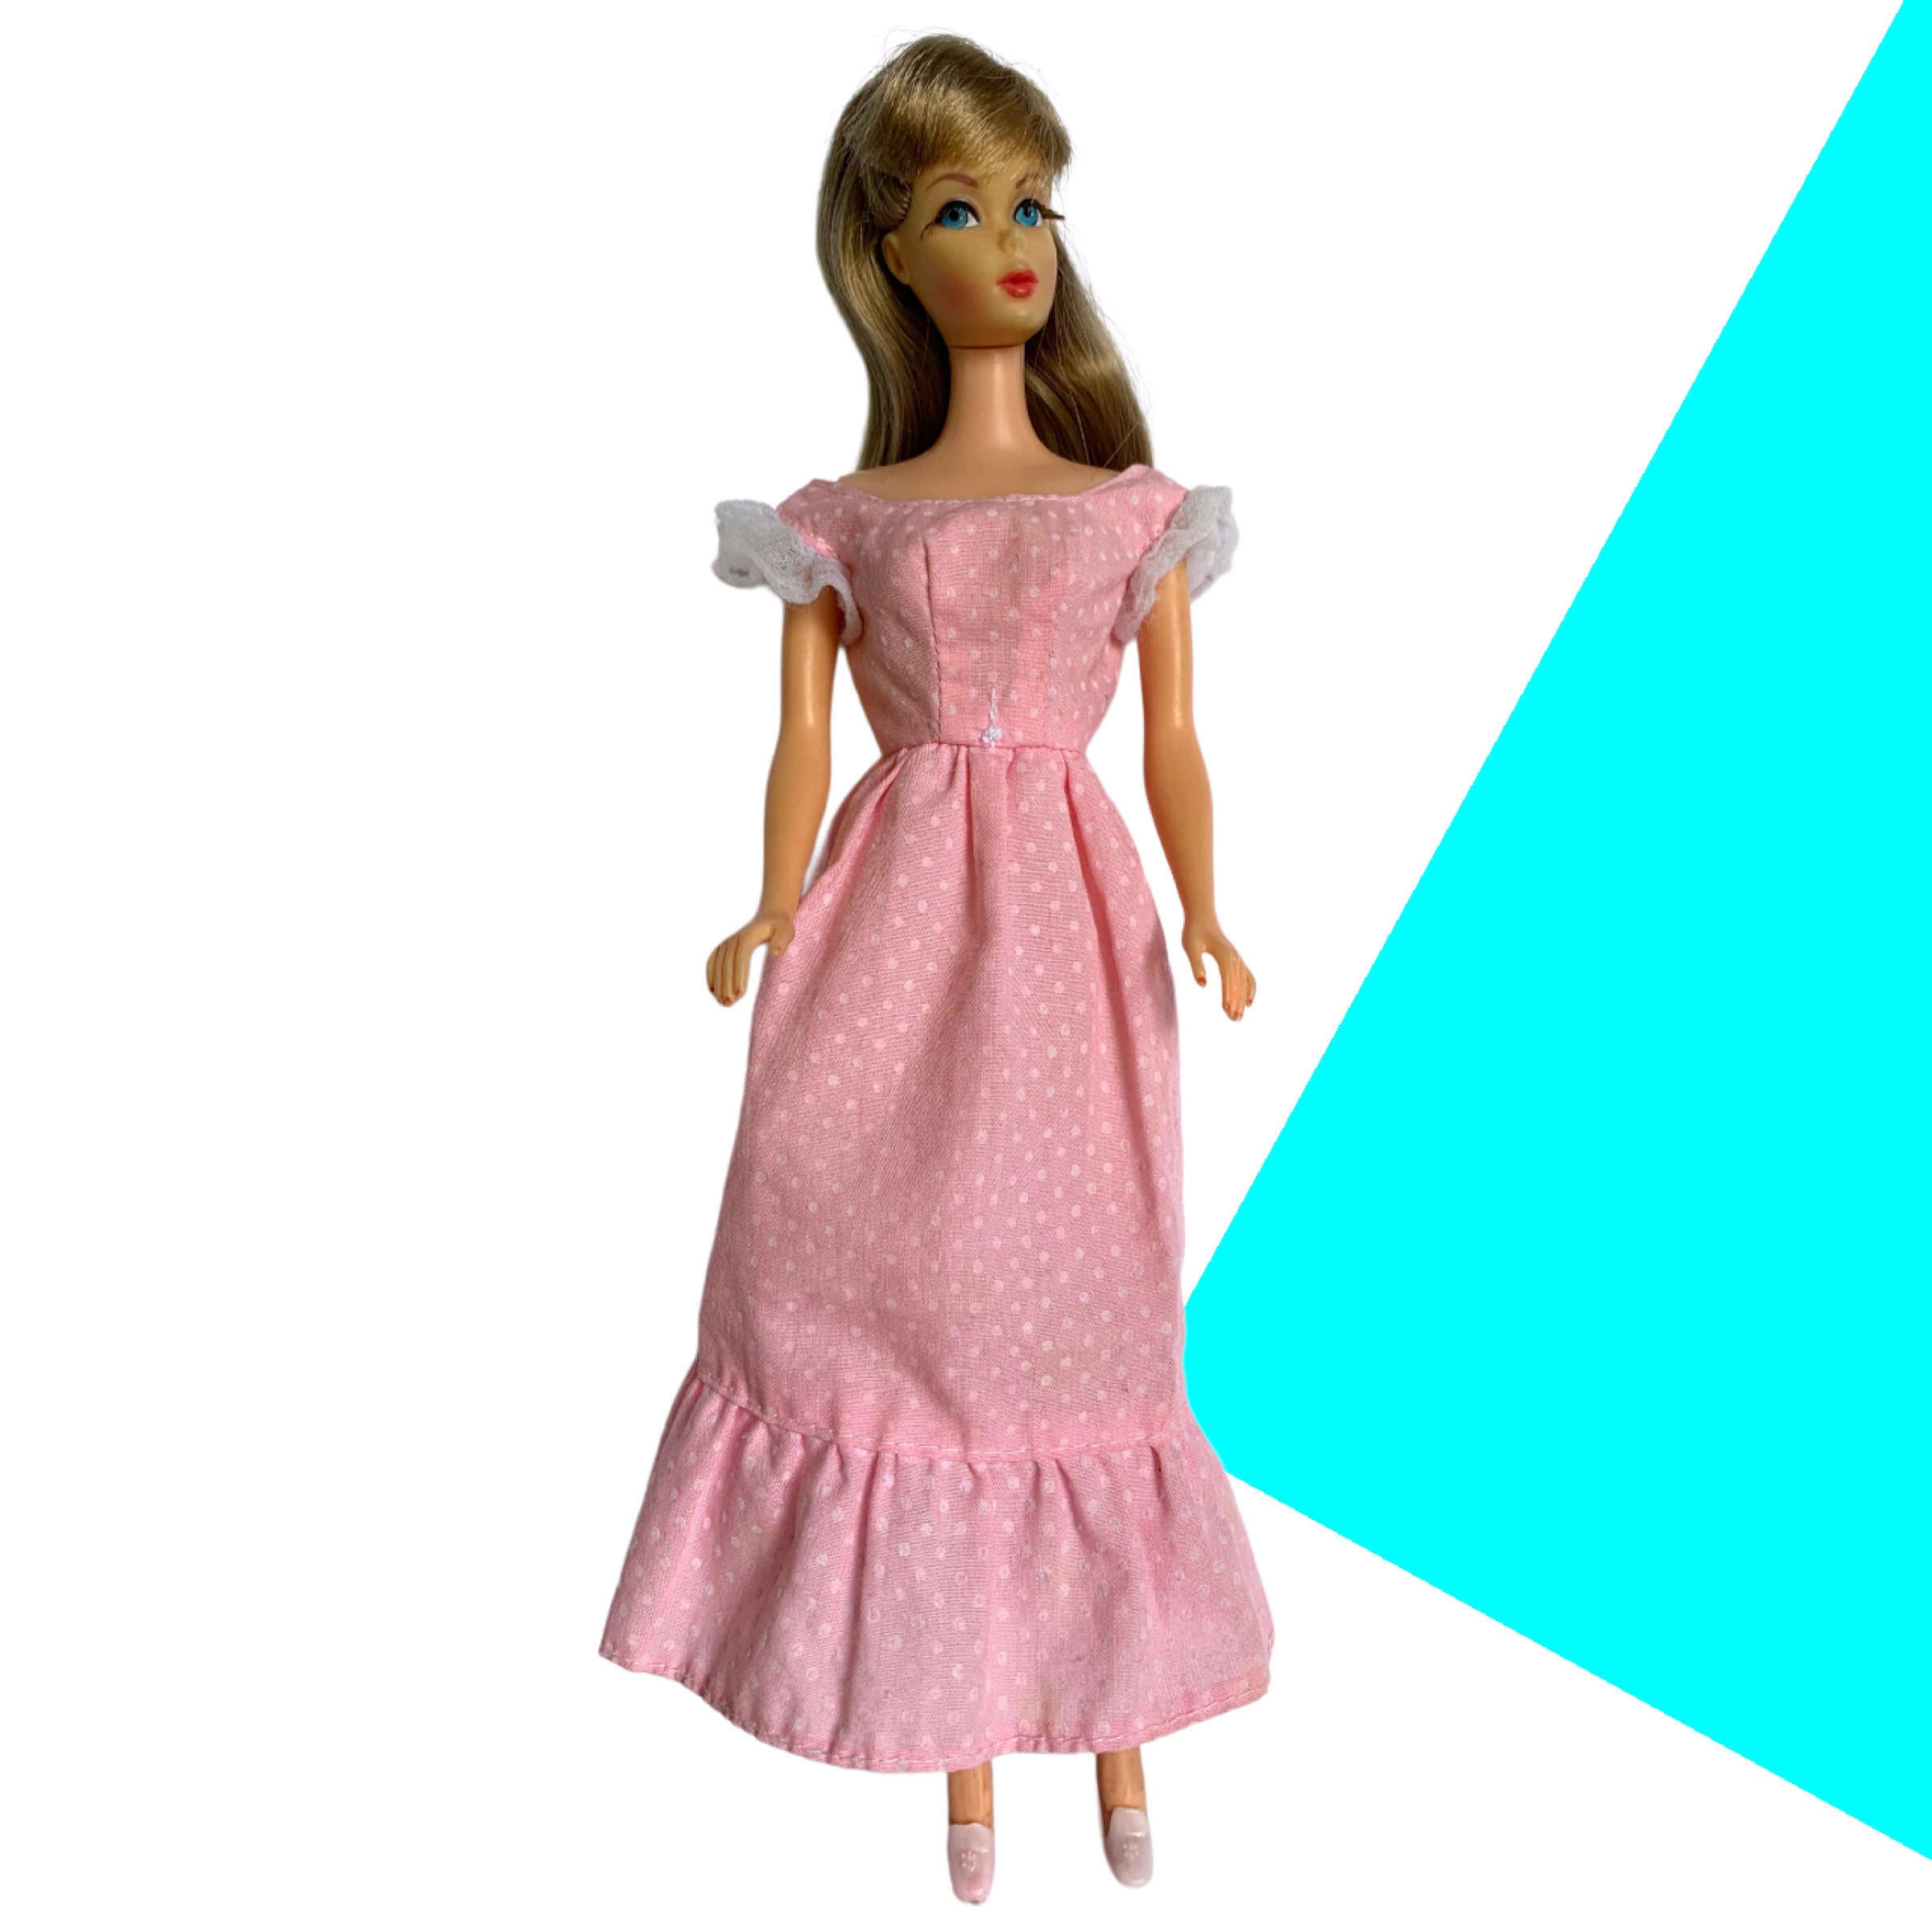 Kit compleanno 16 persone Barbie Dreamtopia